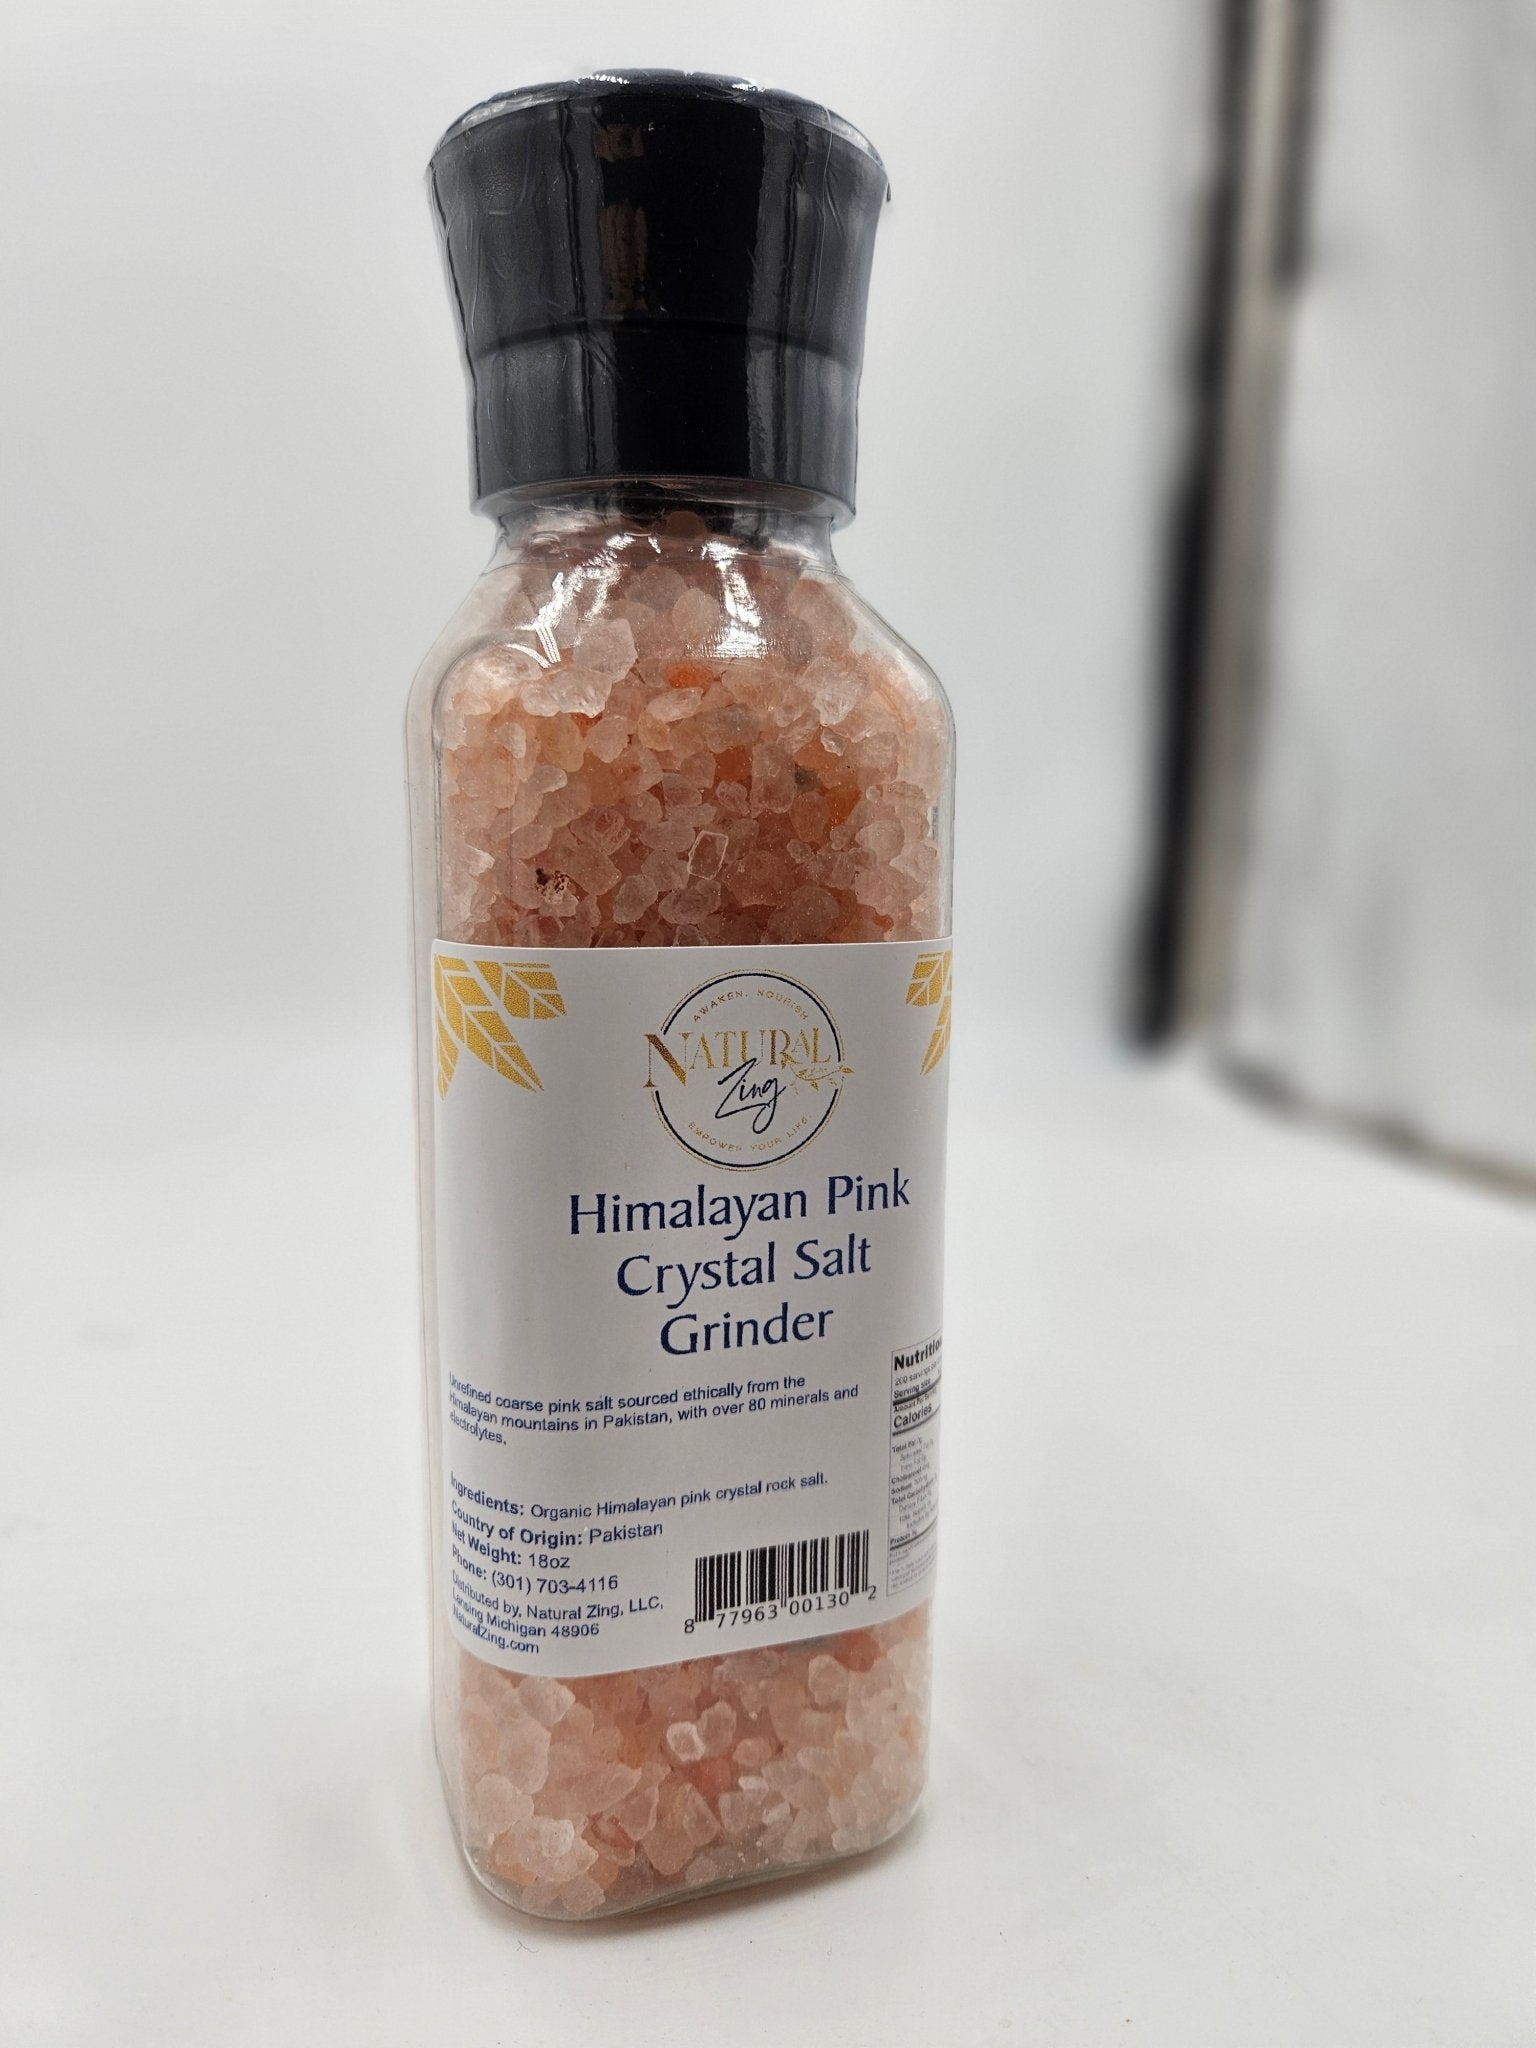 Himalayan Pink Crystal Salt (coarse) 18 oz Grinder Jar - Natural Zing